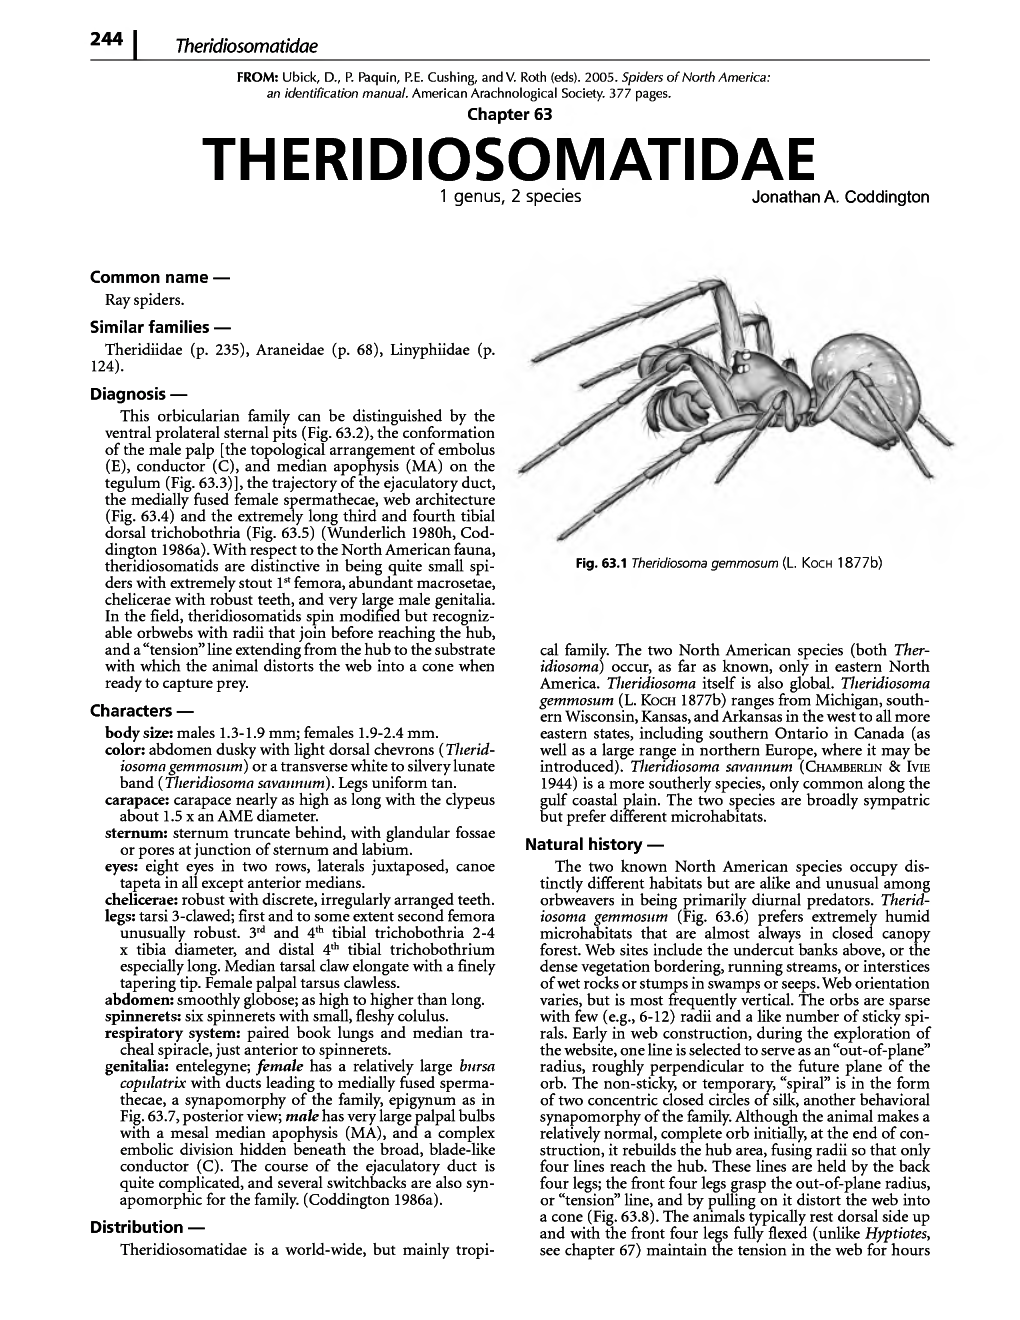 Theridiosomatidae